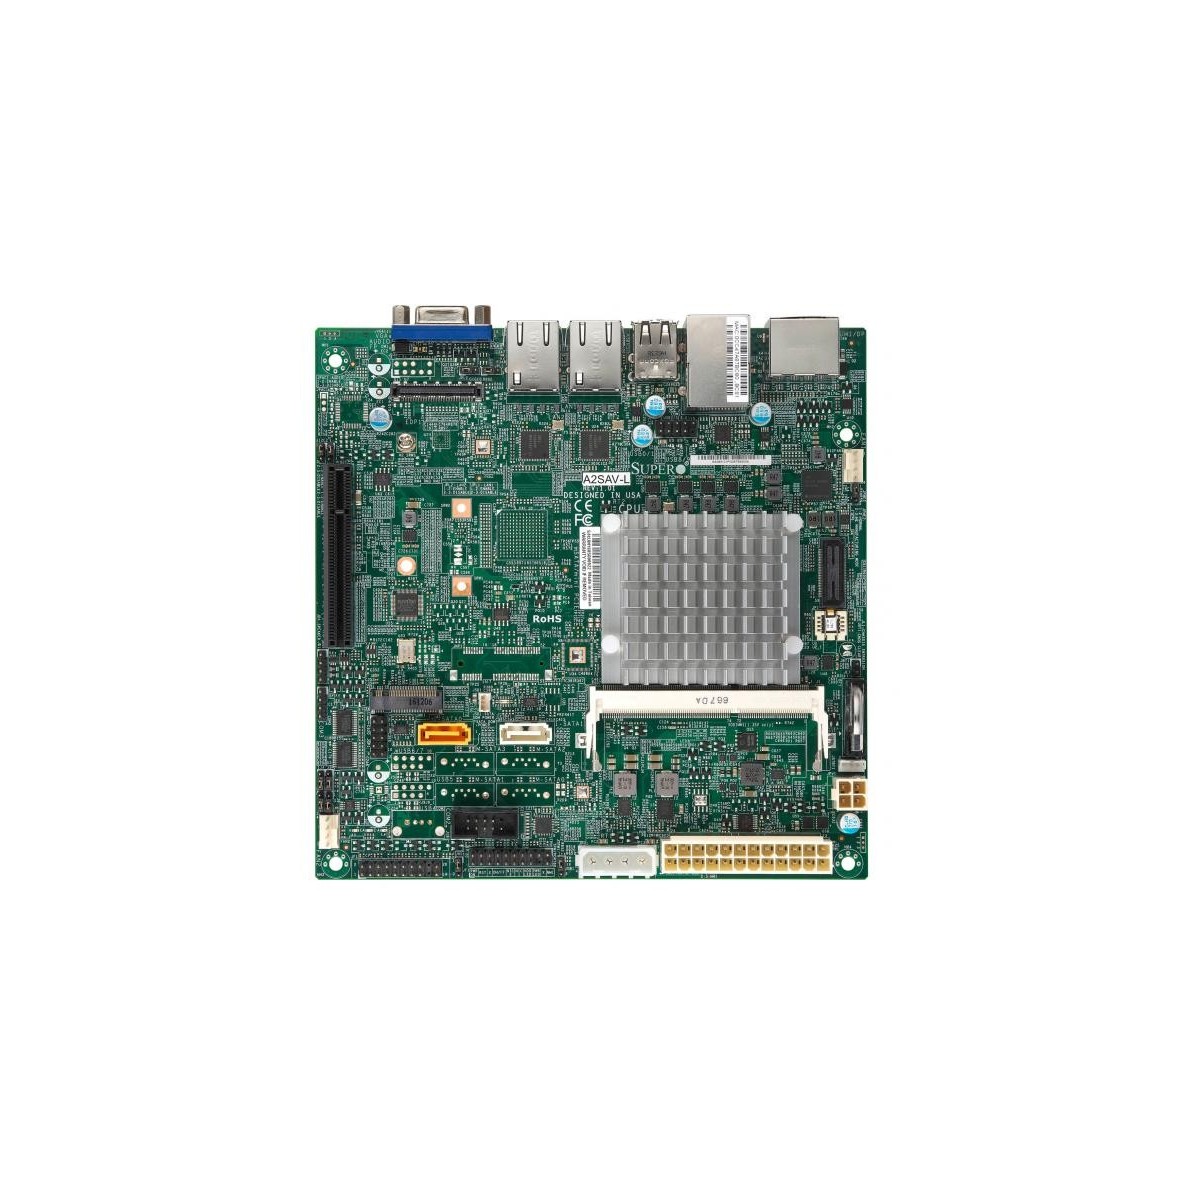 Supermicro Mainboard A2SAV-2C-L mini-ITX Atom x5-E3930 2C-2T 1.3 GHz - USED - Motherboard - Mini-ITX